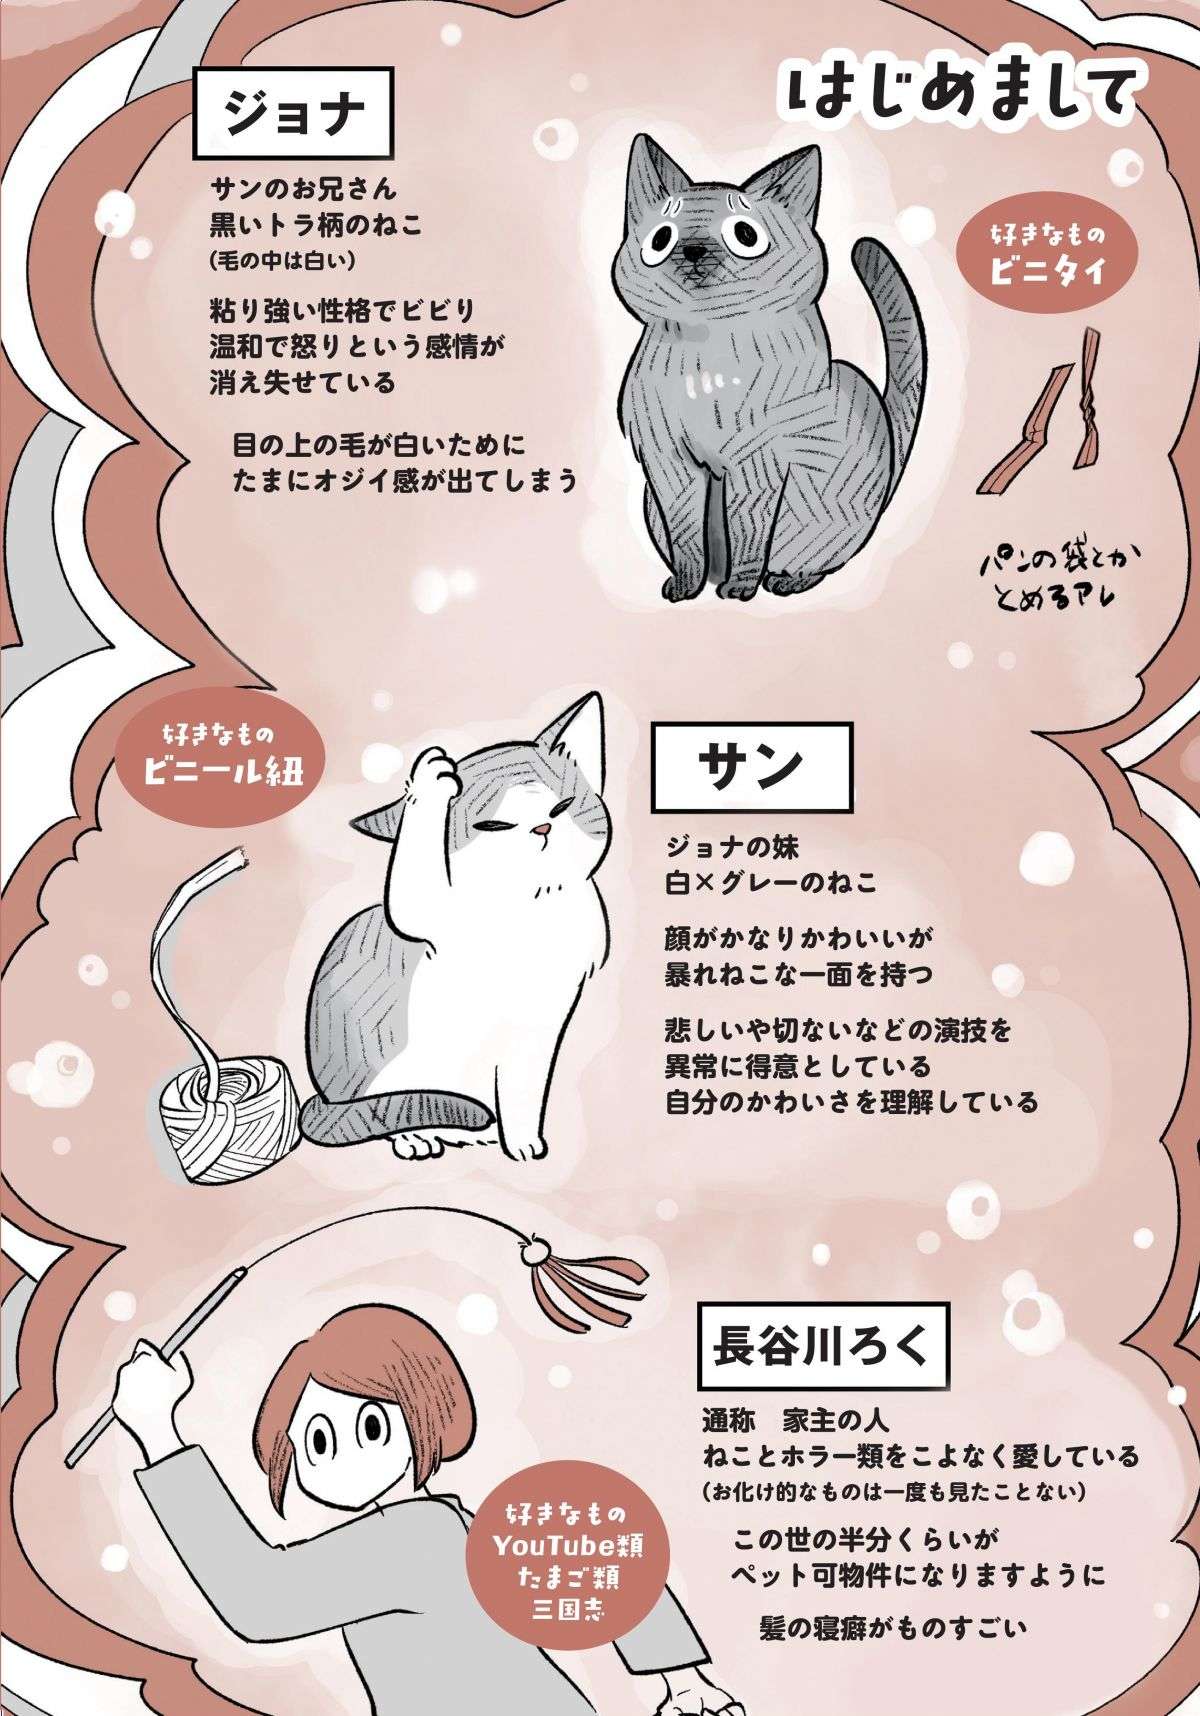 夜中、布団の上に「何か」が乗っている!? 猫とホラーの新ジャンル「怖かわいい」とは／こねこのドレイ koneko_dorei1-1.jpg